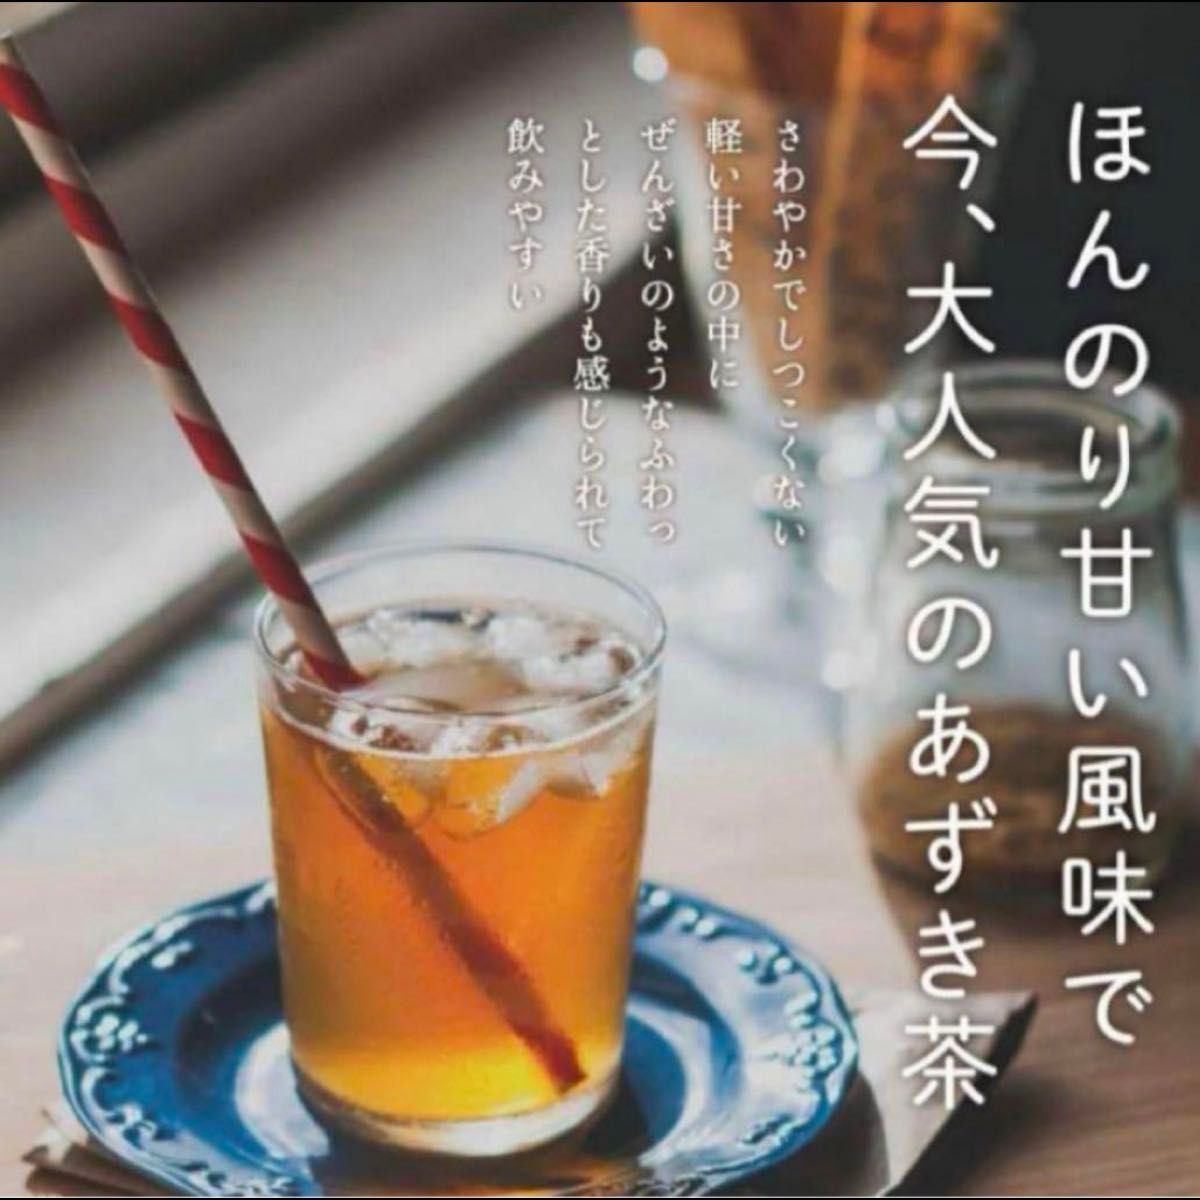 あずき茶 粉末 北海道産 小豆茶 100g ノンカフェイン あずきちゃ自家焙煎